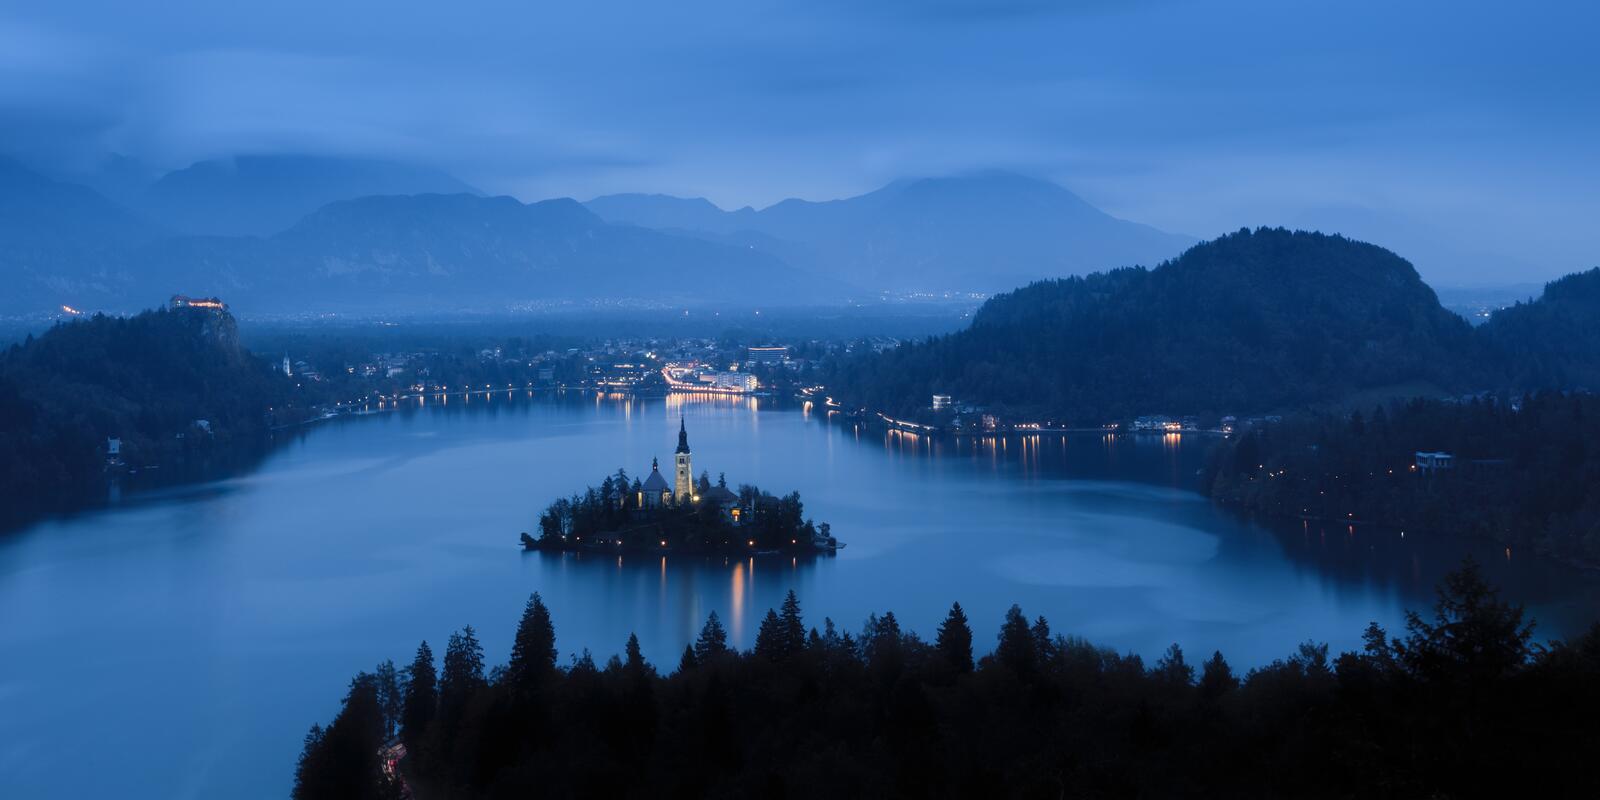 Бесплатное фото Остров с церковью на озере в ночи